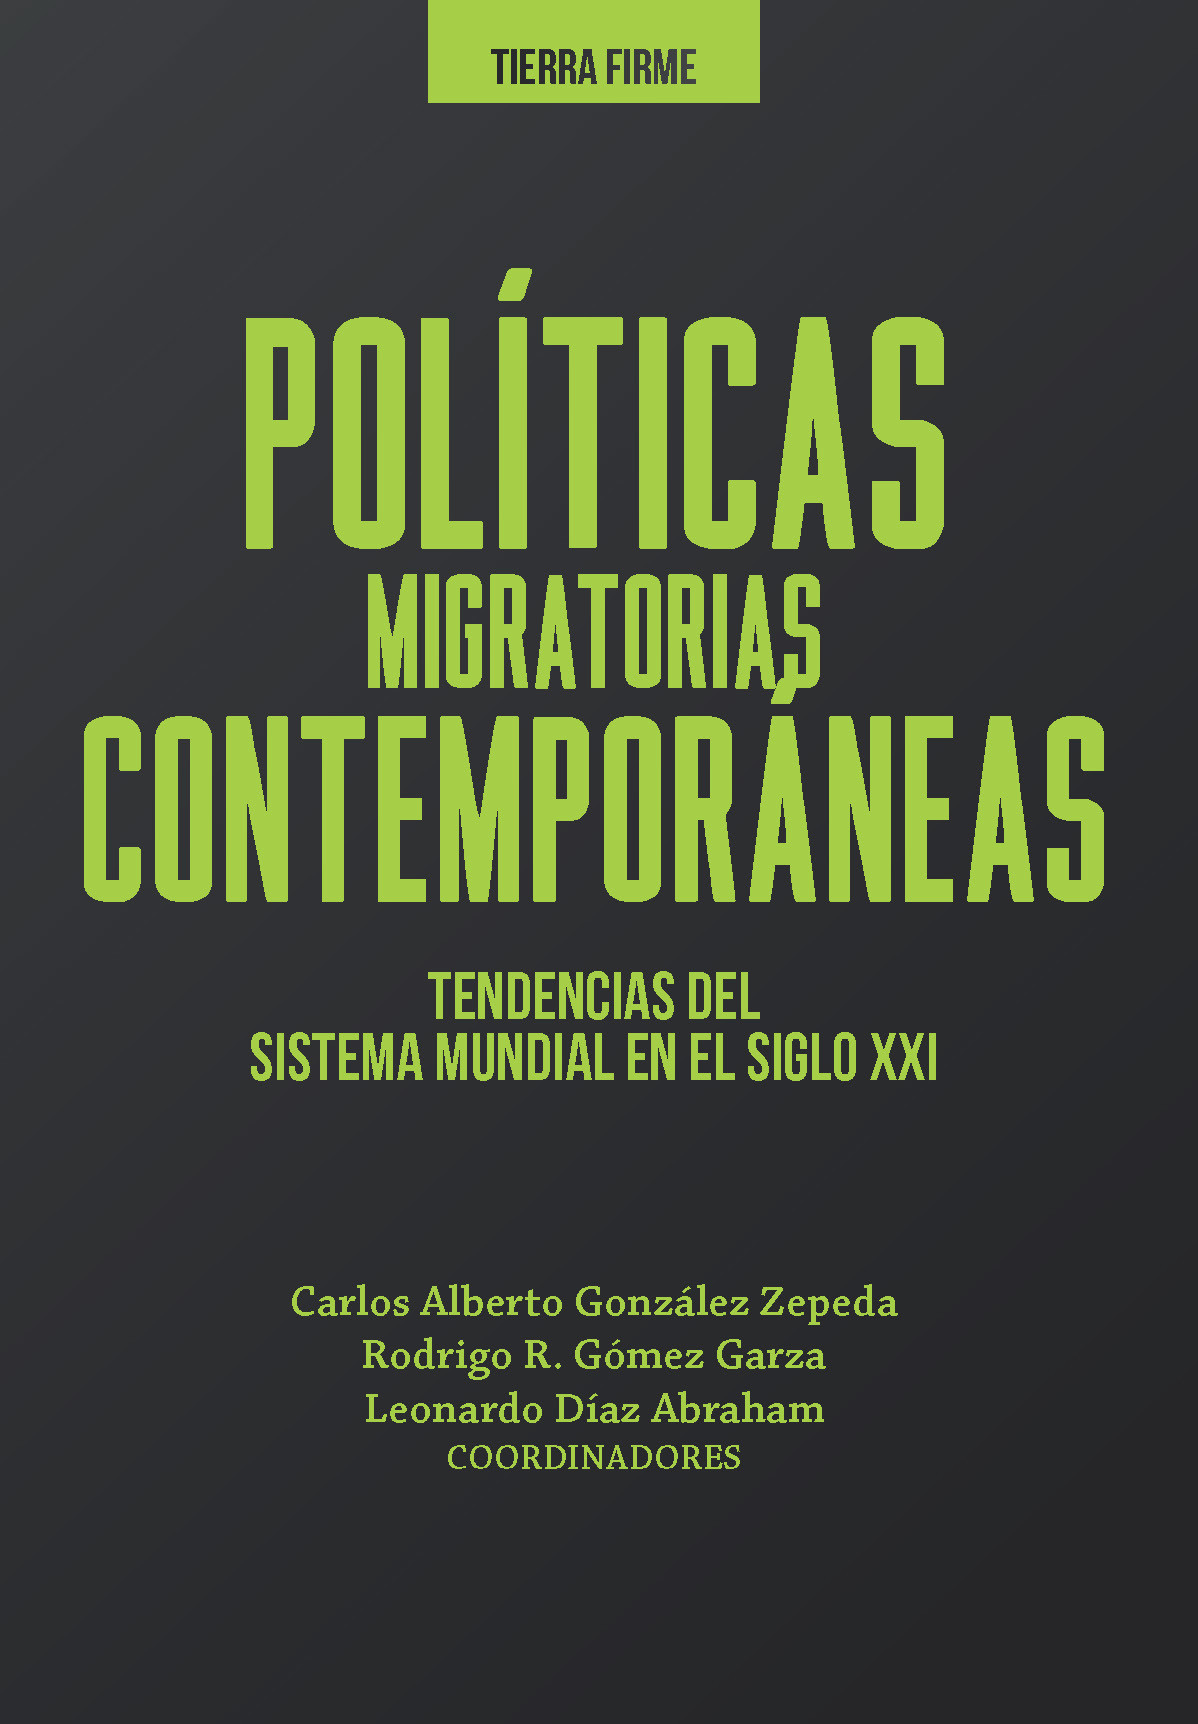 Imagen de portada del libro Políticas migratorias contemporáneas